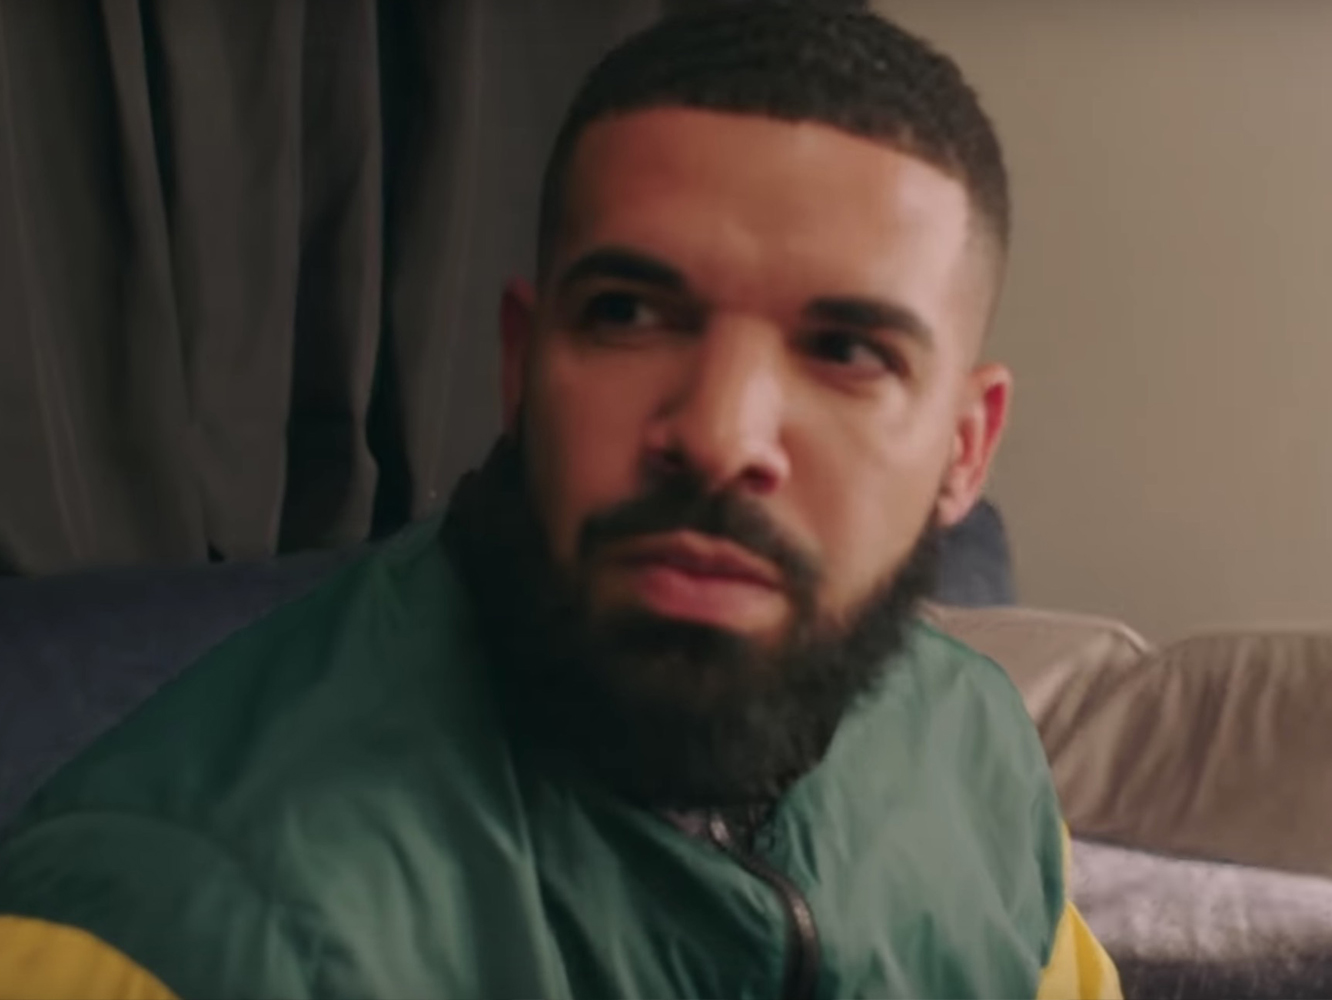  El vídeo inspirado en ‘Los Serrano’ servirá para impulsar más la viralidad de ‘In My Feelings’ de Drake